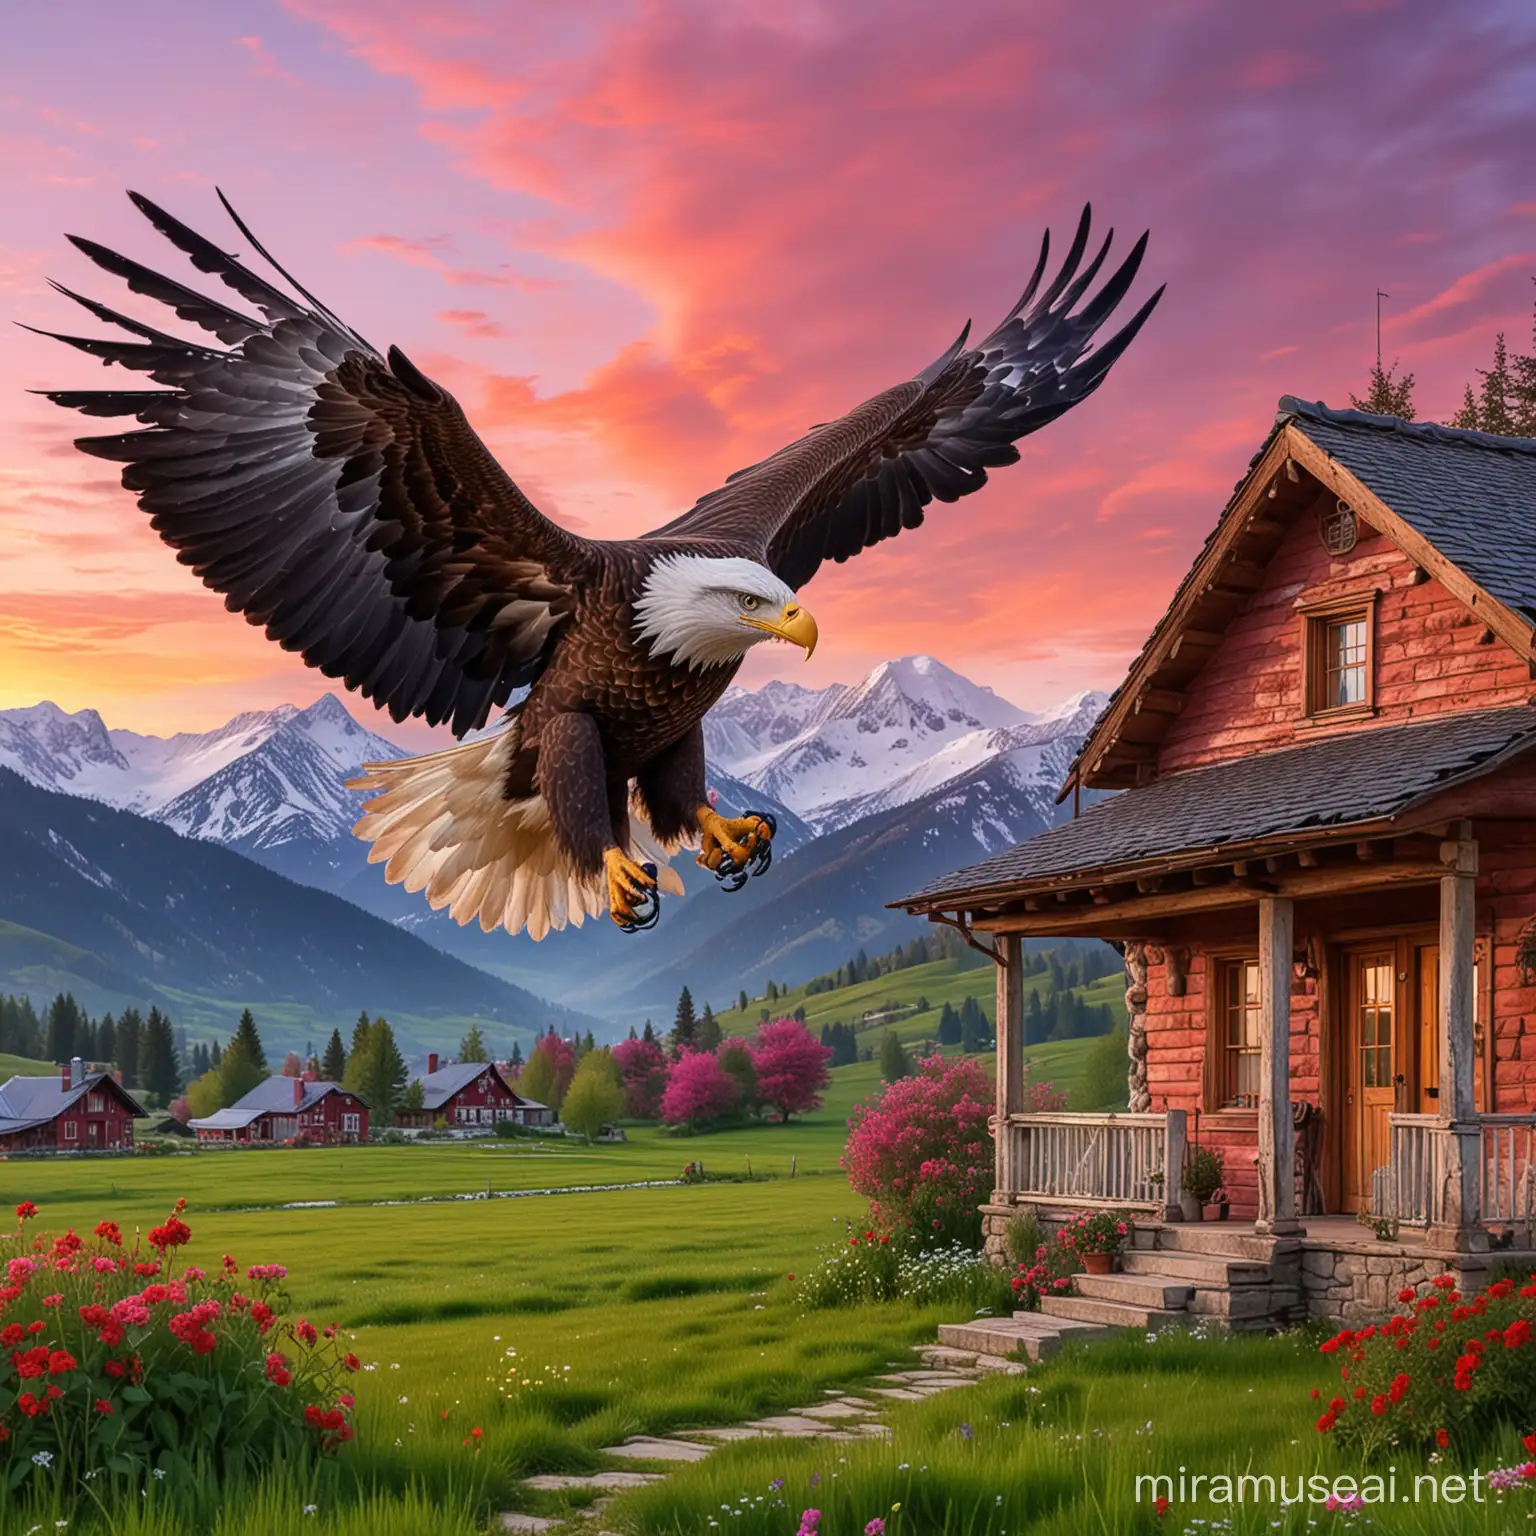 águila completo con sus alas extendidas volando con un cielo rosa y rojo, al fondo unas montañas nevadas y abajo una hermosa casa rural con prados verdes, con hermosos de colores muy vivos, rojo, blanco, negro, verde,  con ojos azules penetrantes